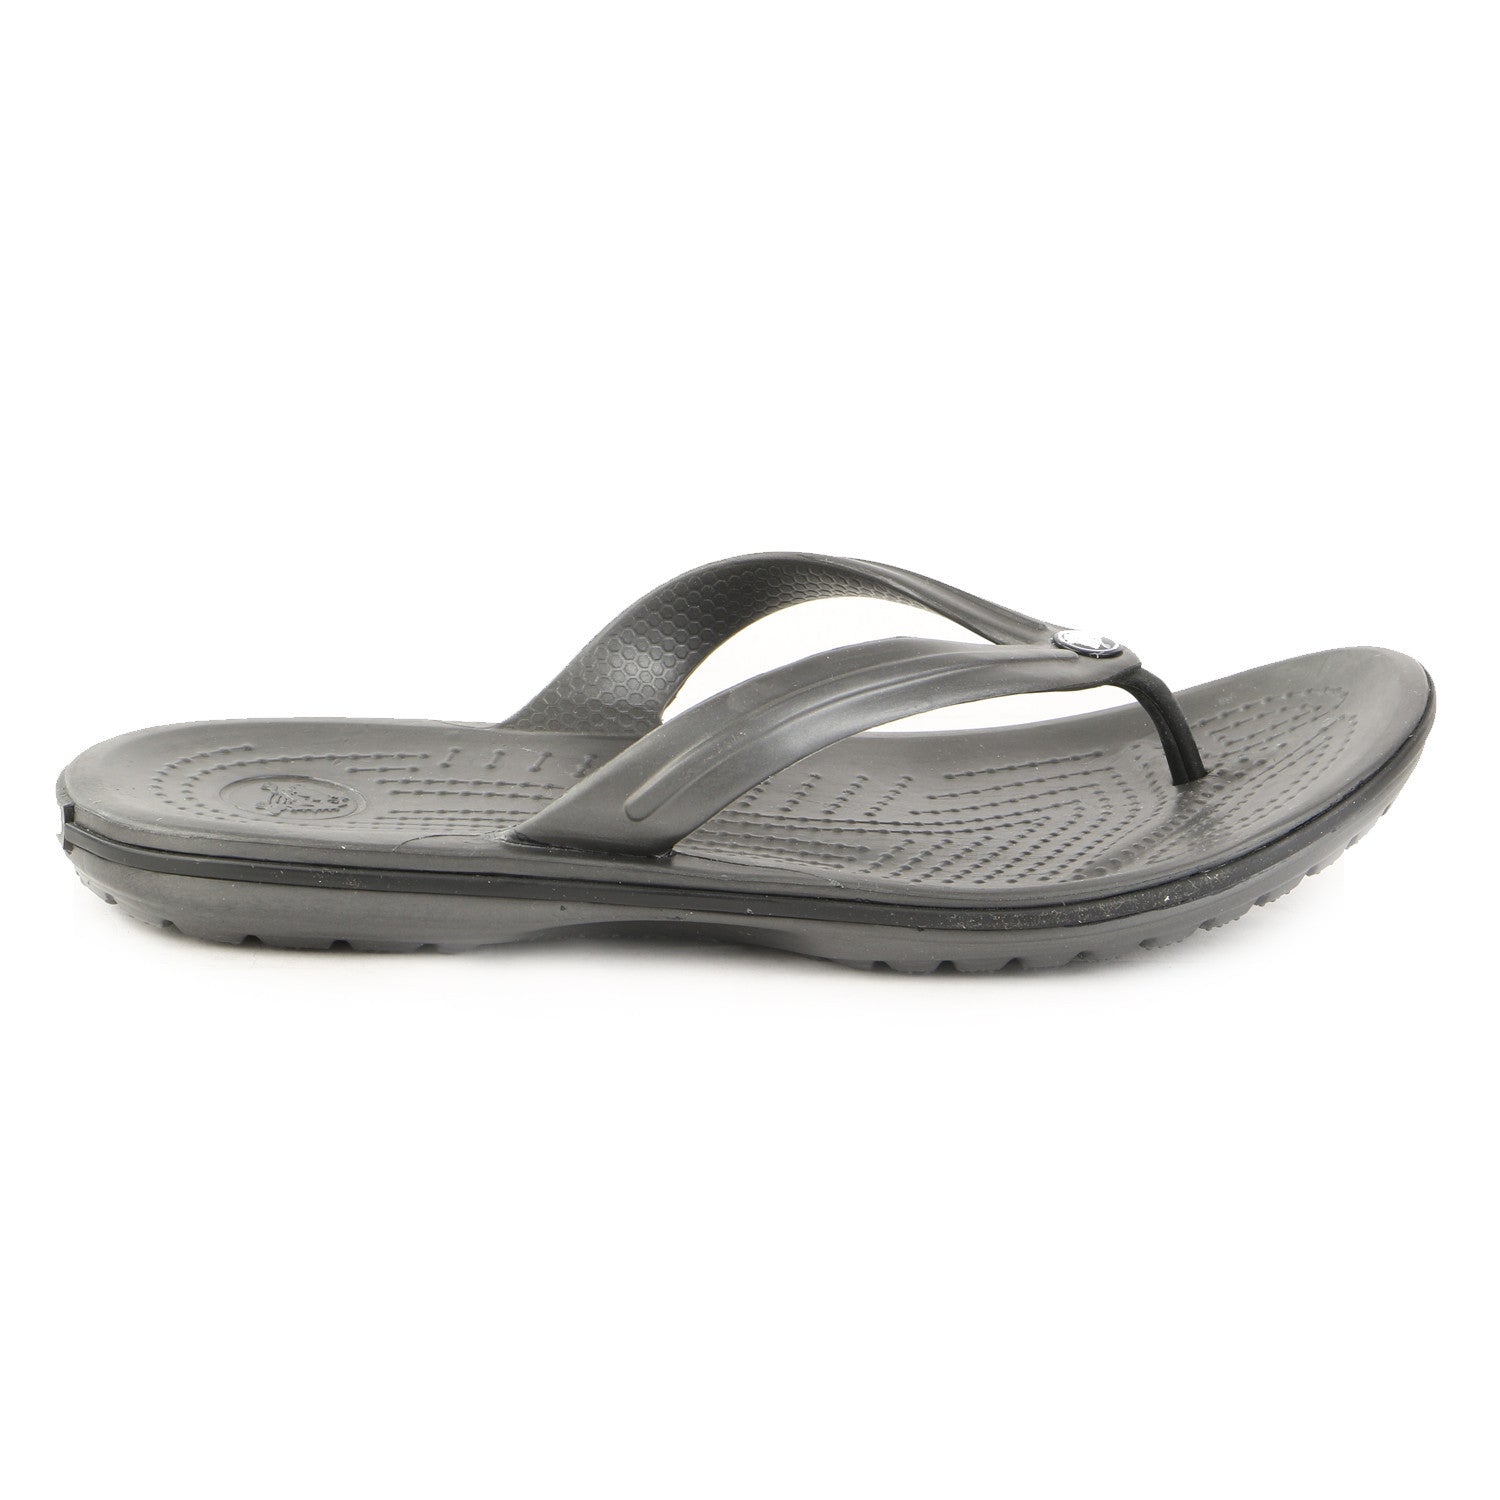 Crocs Crocband Flip Flop Thong Sandal - Black - Mens - Shoplifestyle